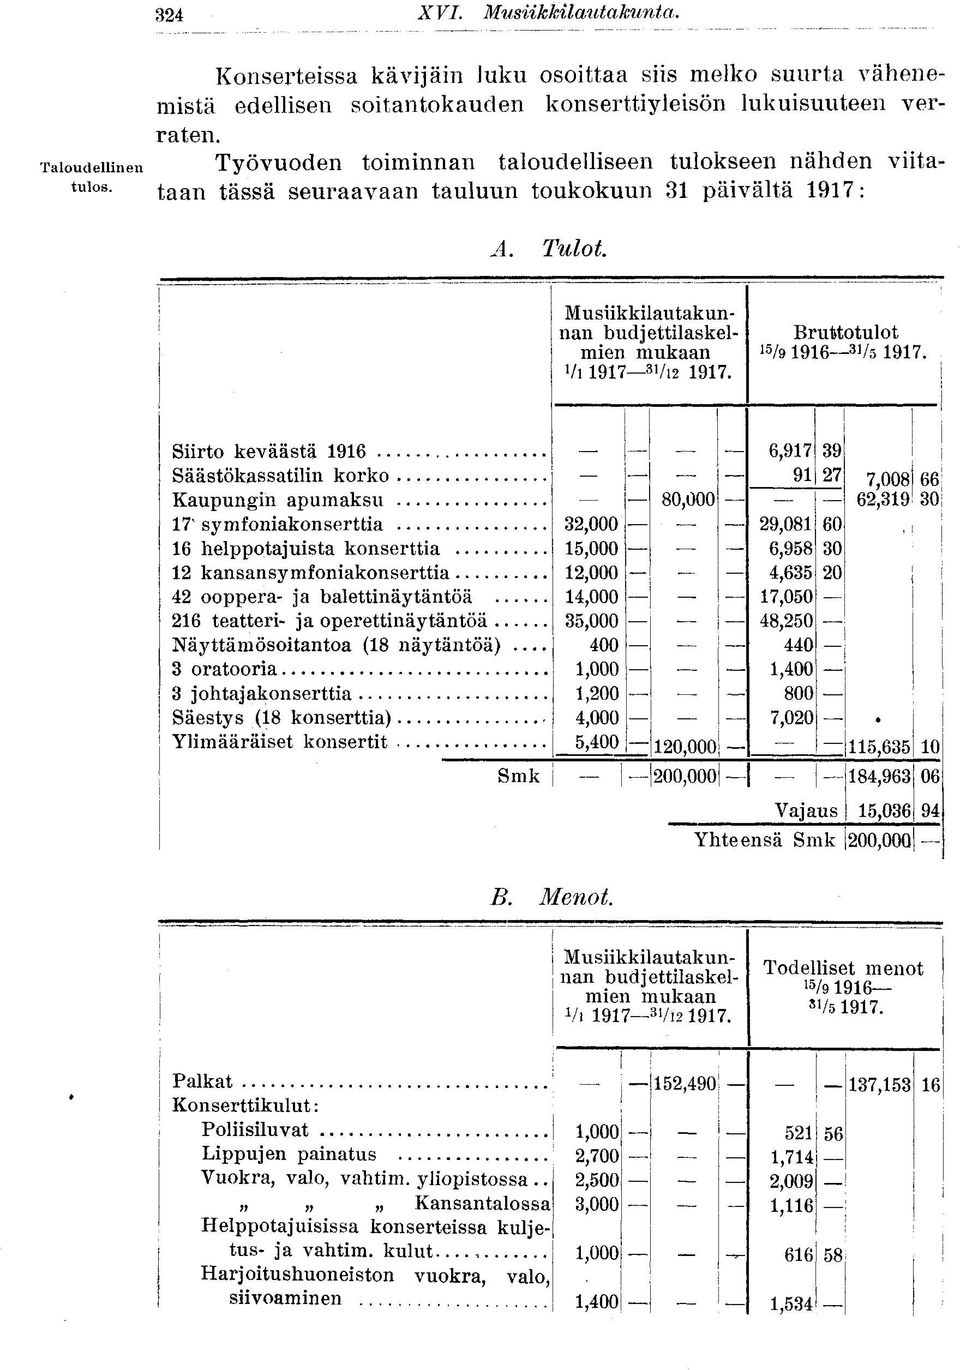 Tulot Musiikkilautakunnan budjettilaskelmien mukaan Vi 1917 3I /i2 1917. Bruttotulot 15 /9 1916 31 /5 1917.